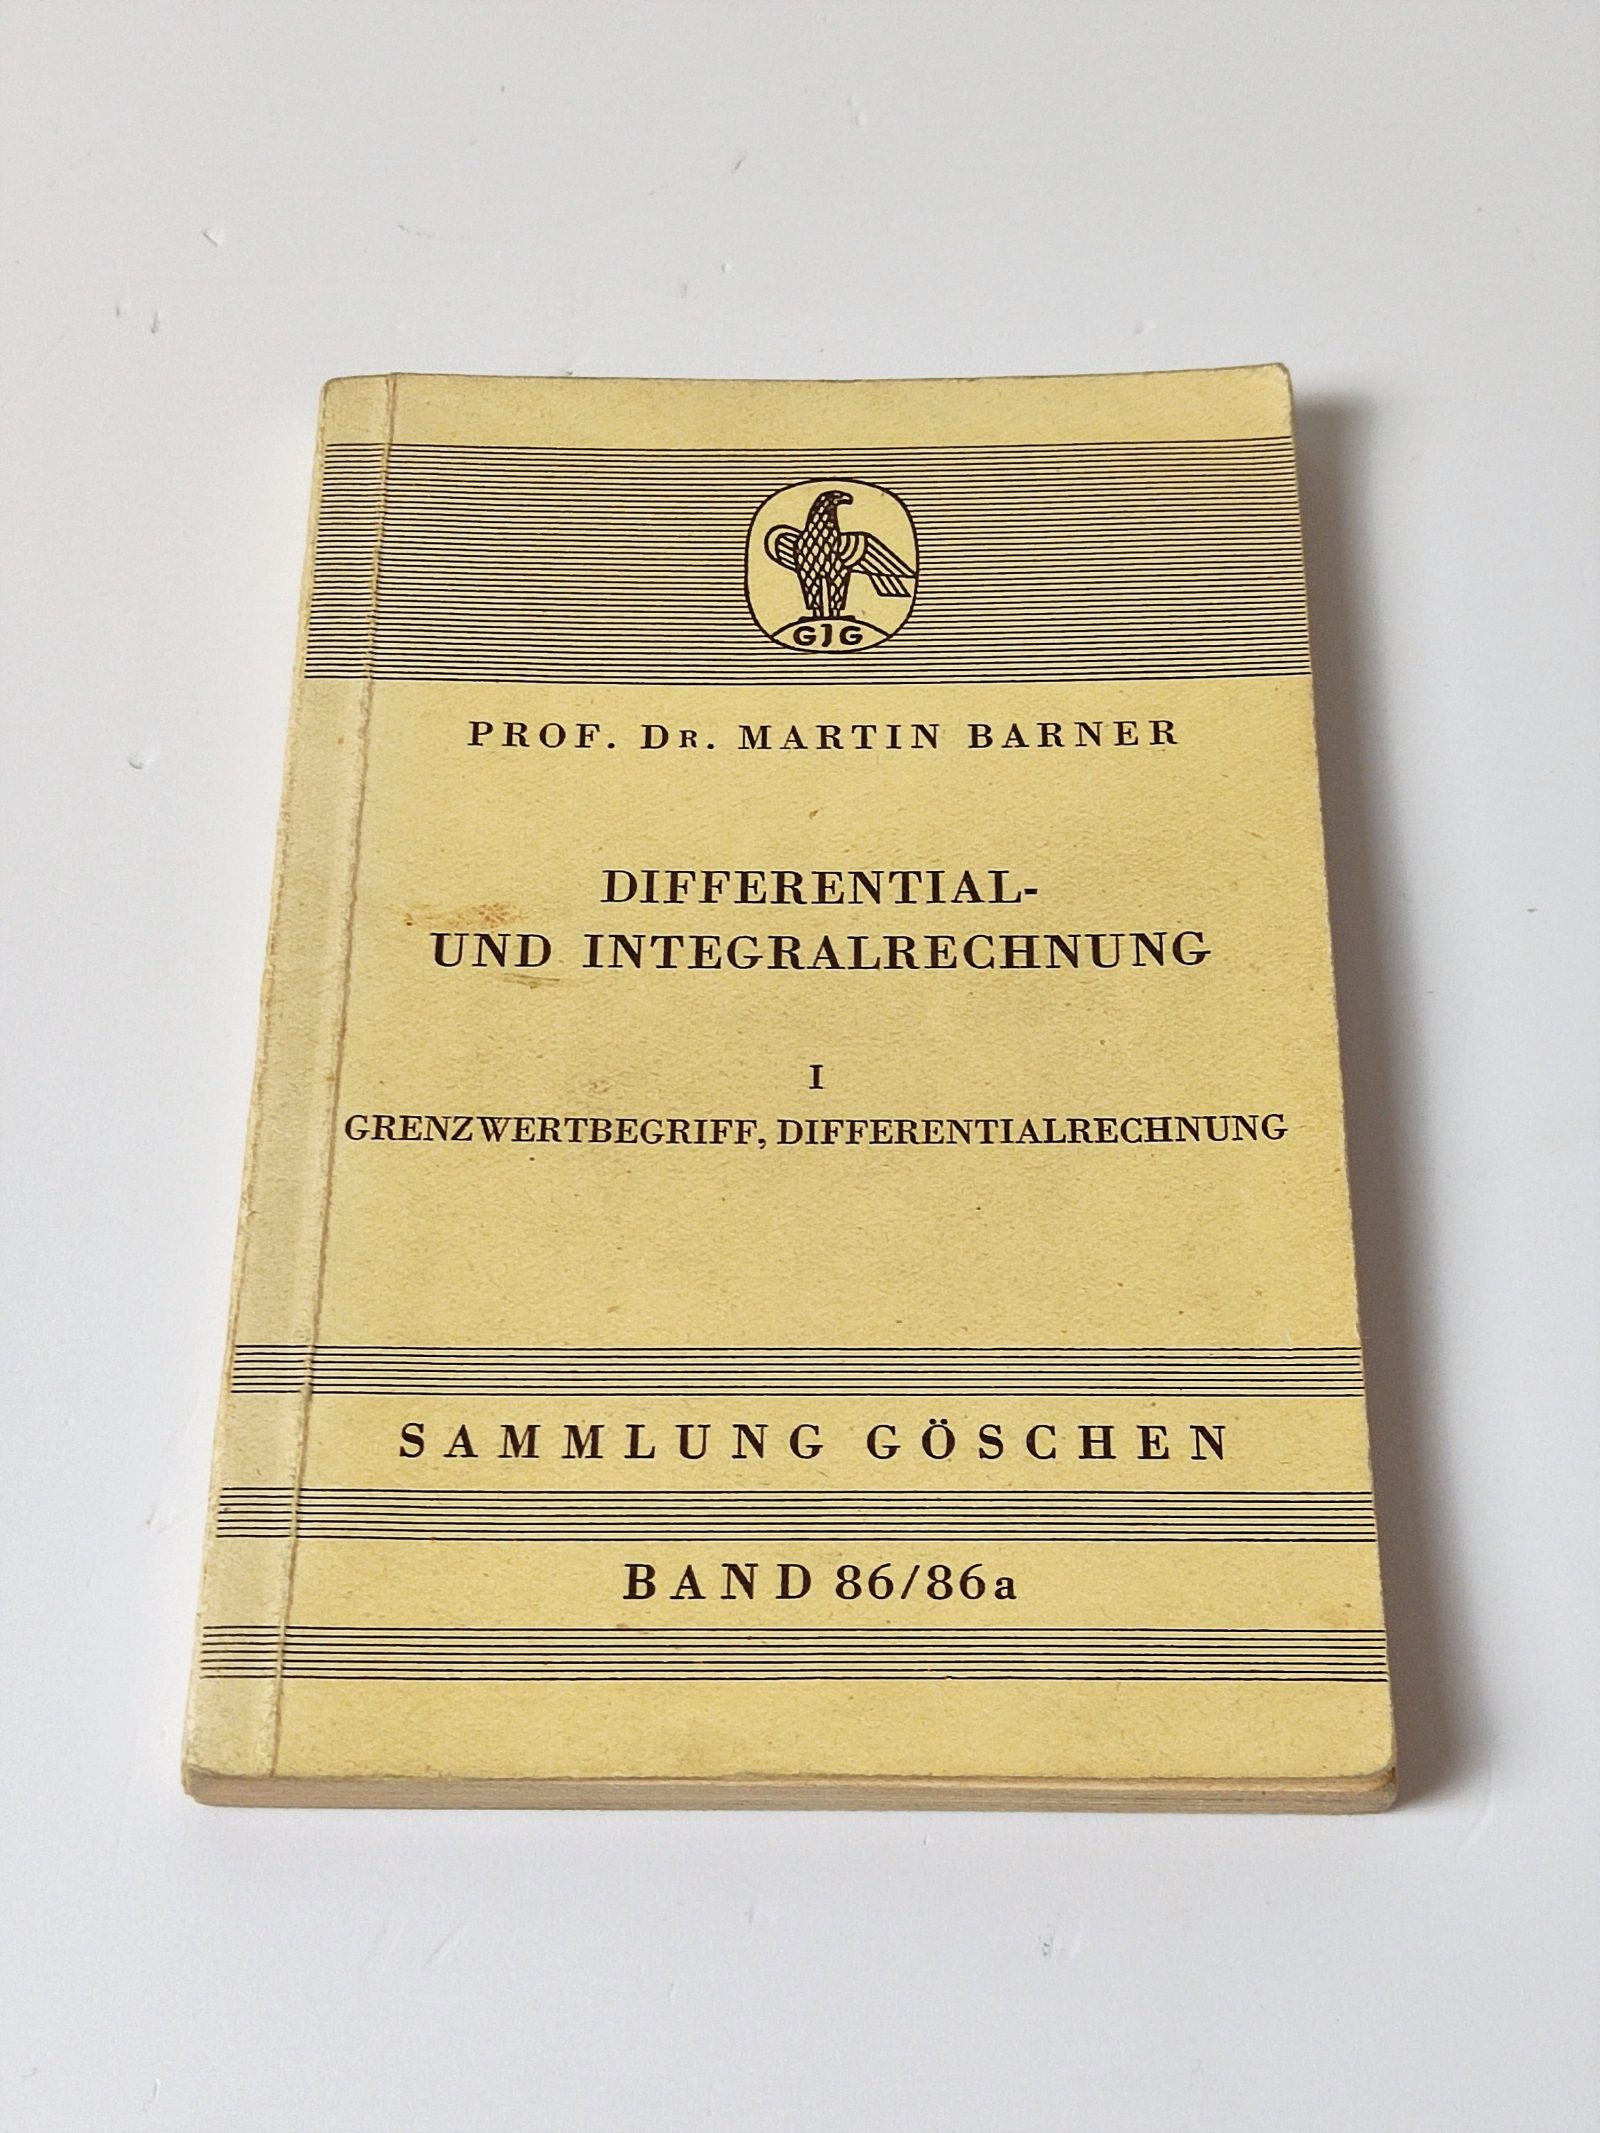 Differential- und Integralrechnung: I. Grenzwertbegriff, Differentialrechnung - Sammlung Göschen - Barner, Prof. Dr. Martin